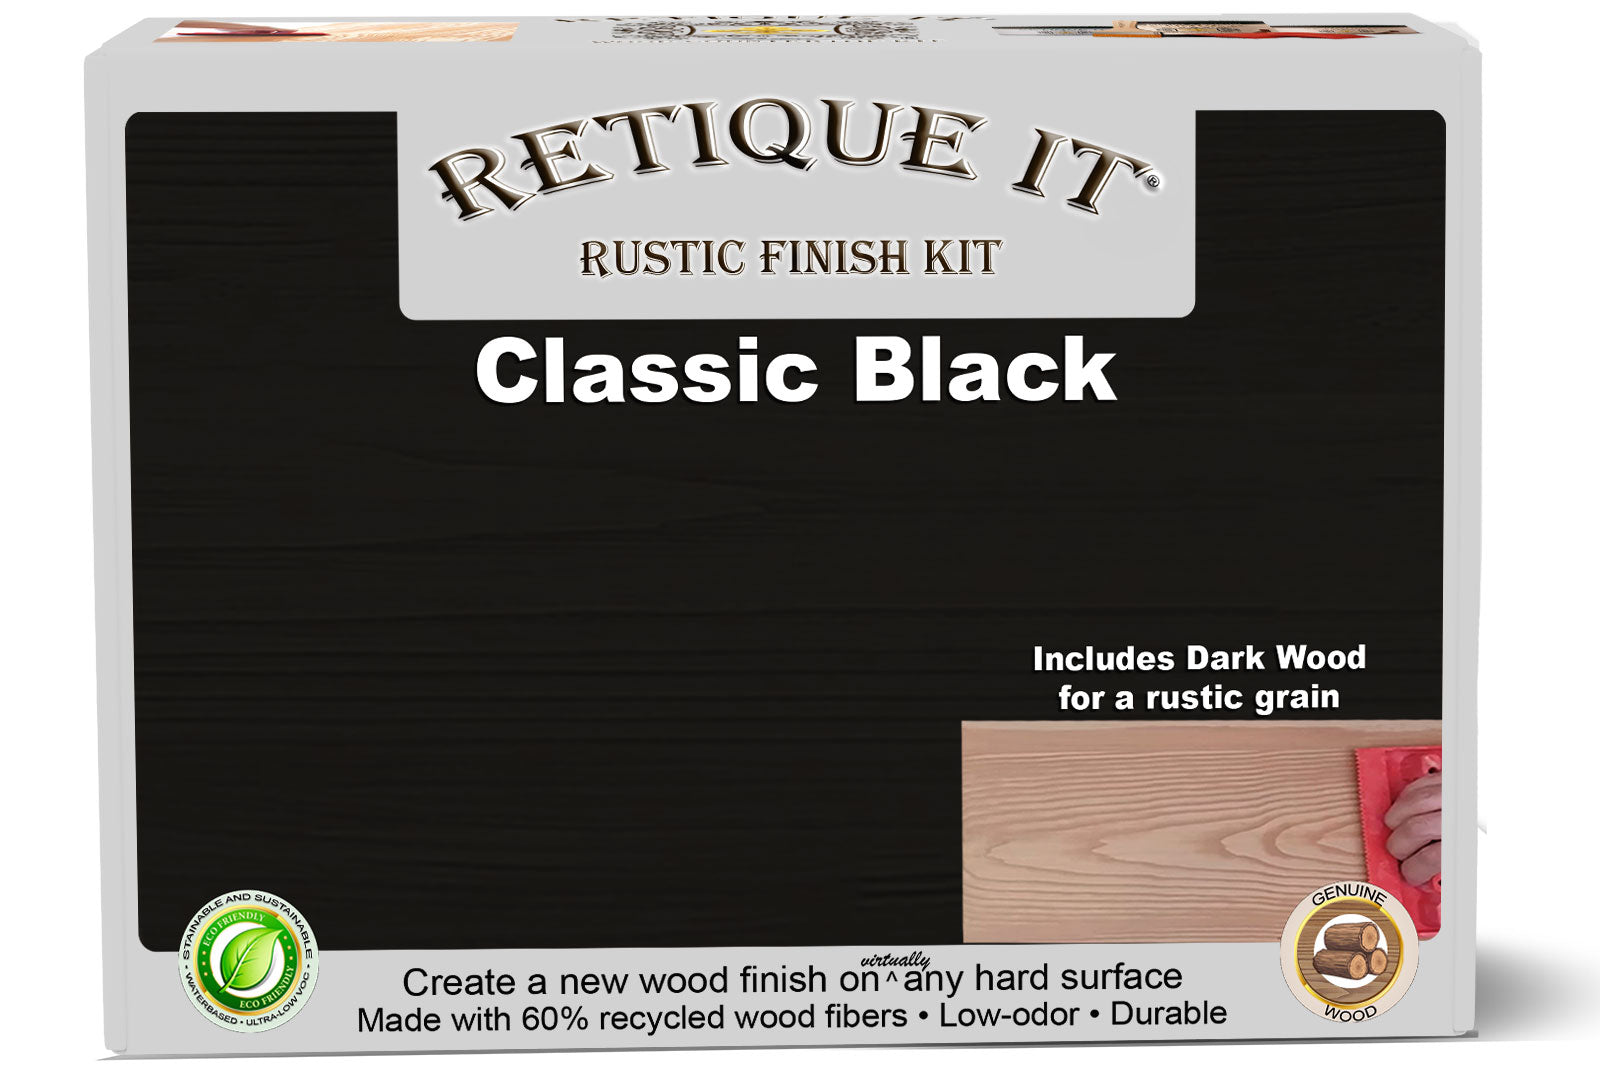 Rustic Finish Kit - Classic Black